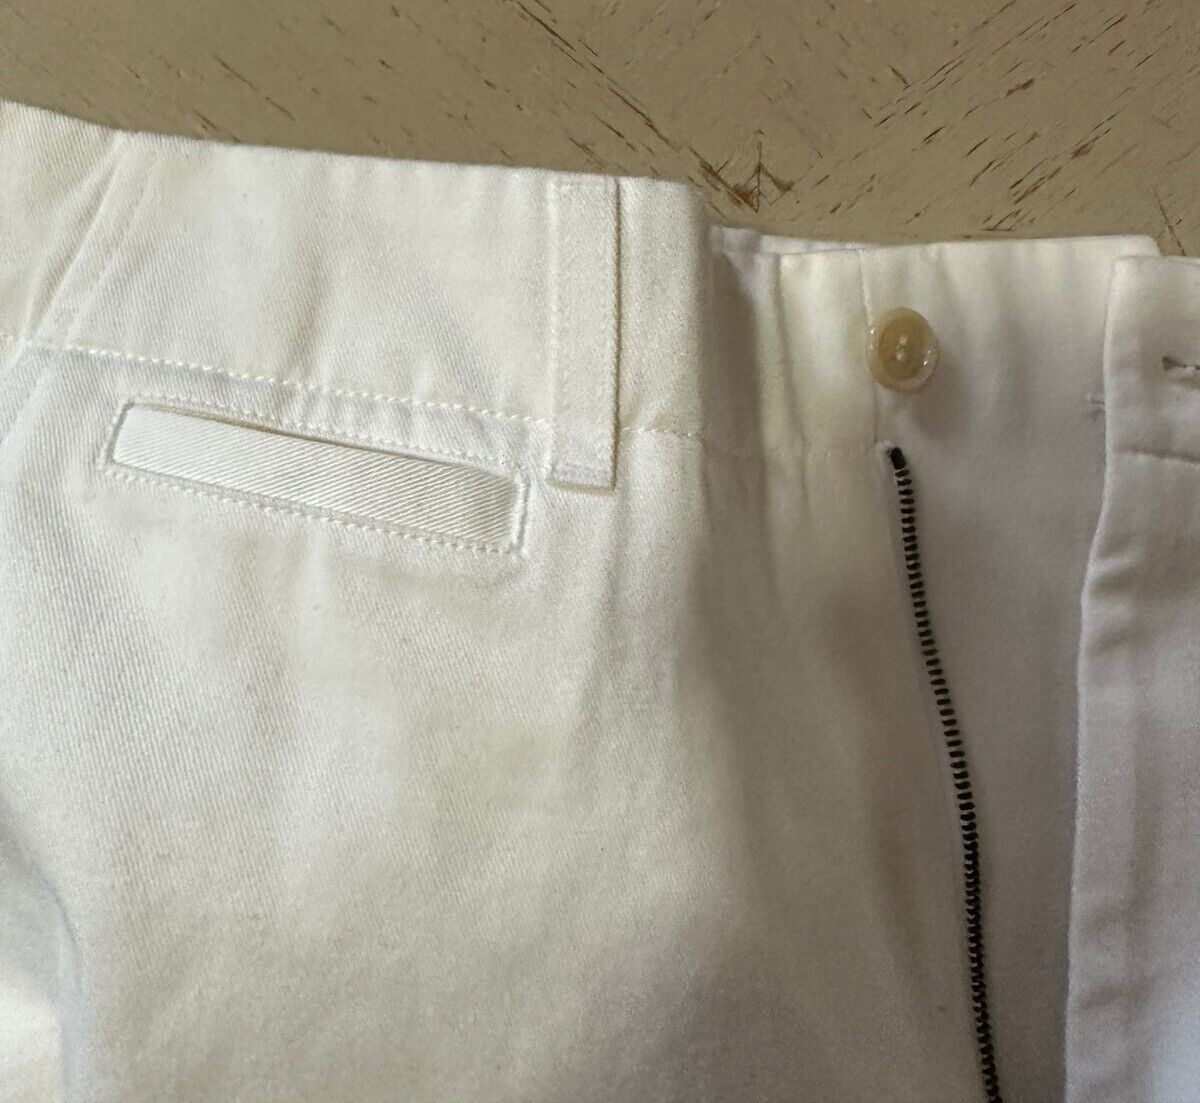 NWT $880 Gucci Mens Military Cotton Short Pants Color Milk 30 US/46 Eu Italy